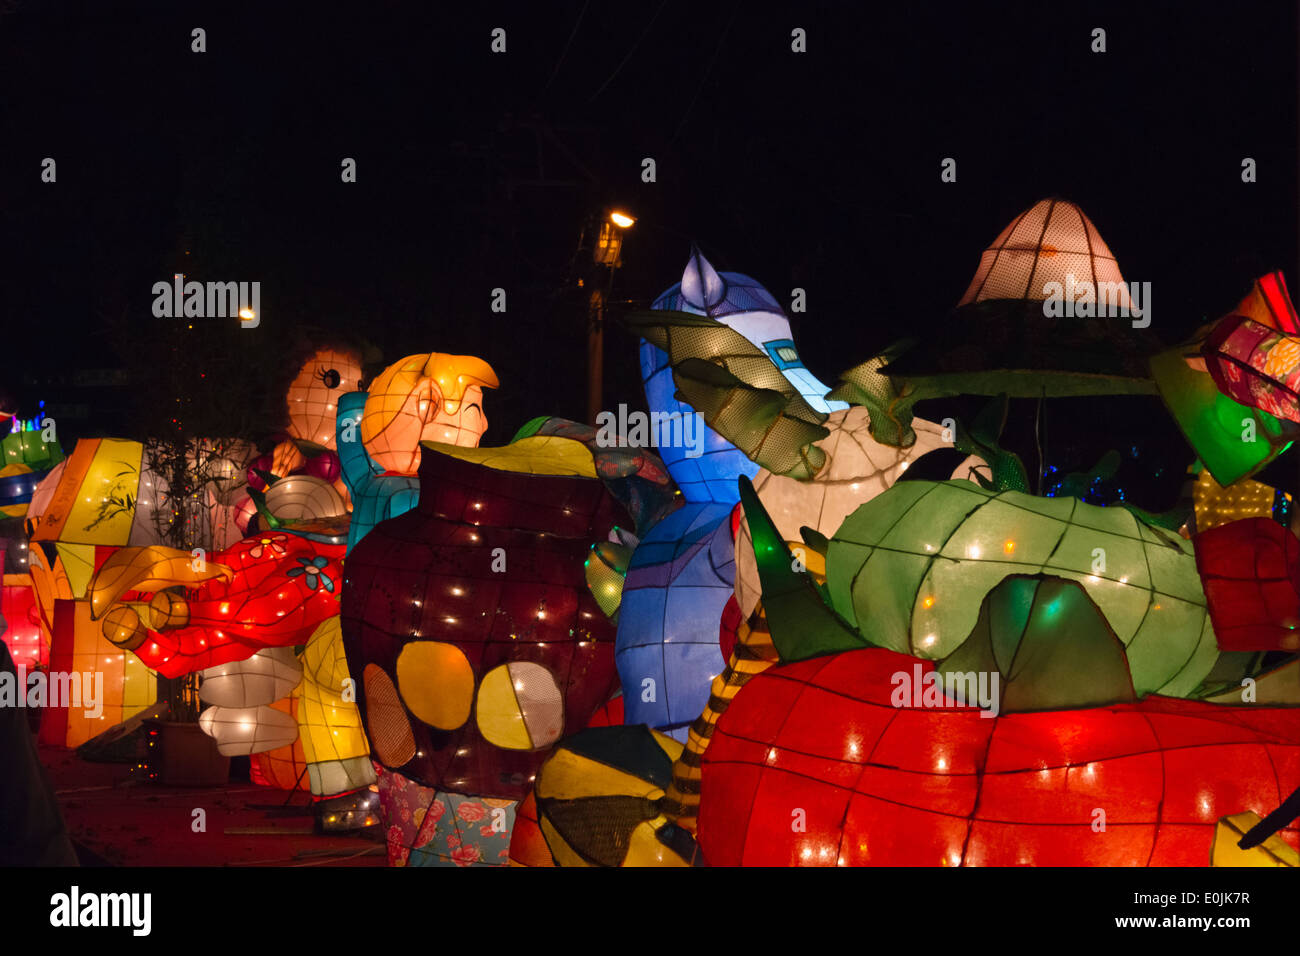 Lanterne colorate a festa delle lanterne, Nantou, Taiwan Foto Stock